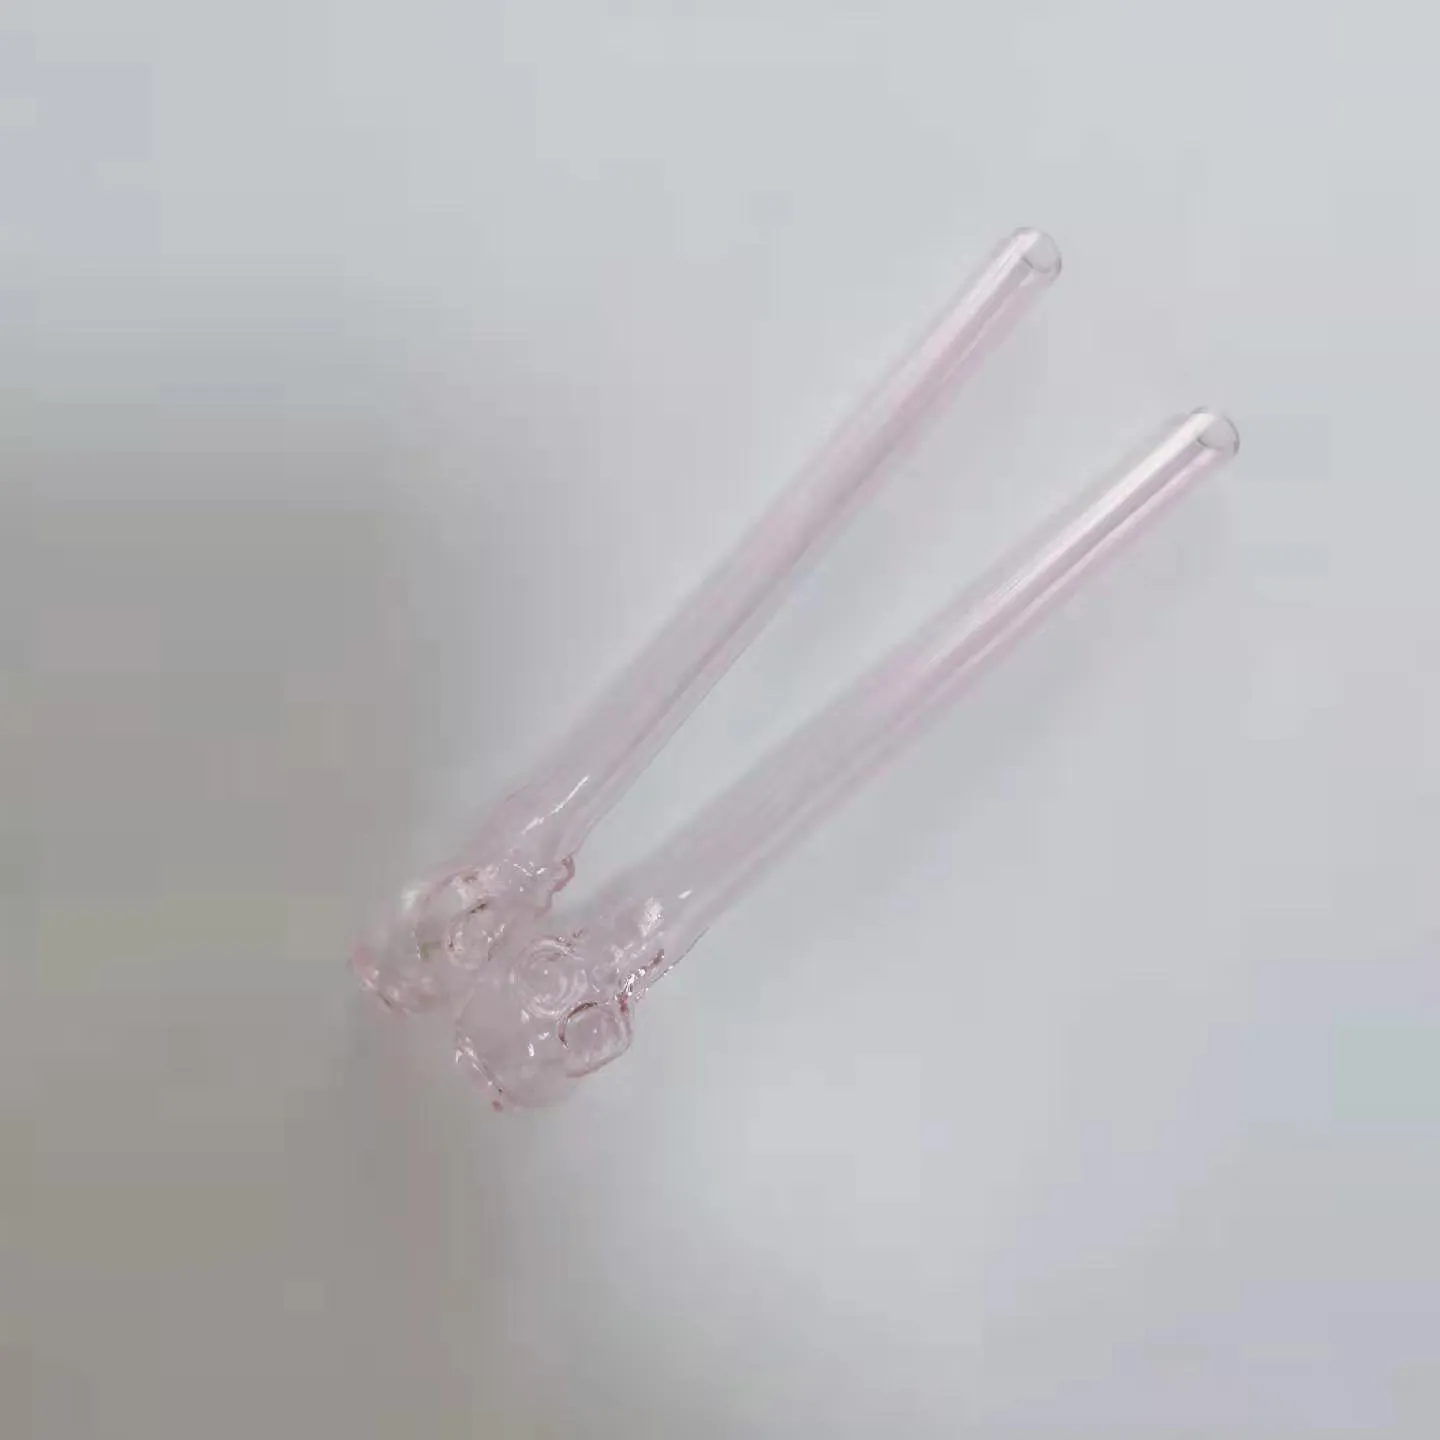 4.7 "핑크 두개골 냄비 유리 유리 오일 버너 파이프 왁스 핸드 파이프 내구성있는 훌륭한 튜브 도매 중국